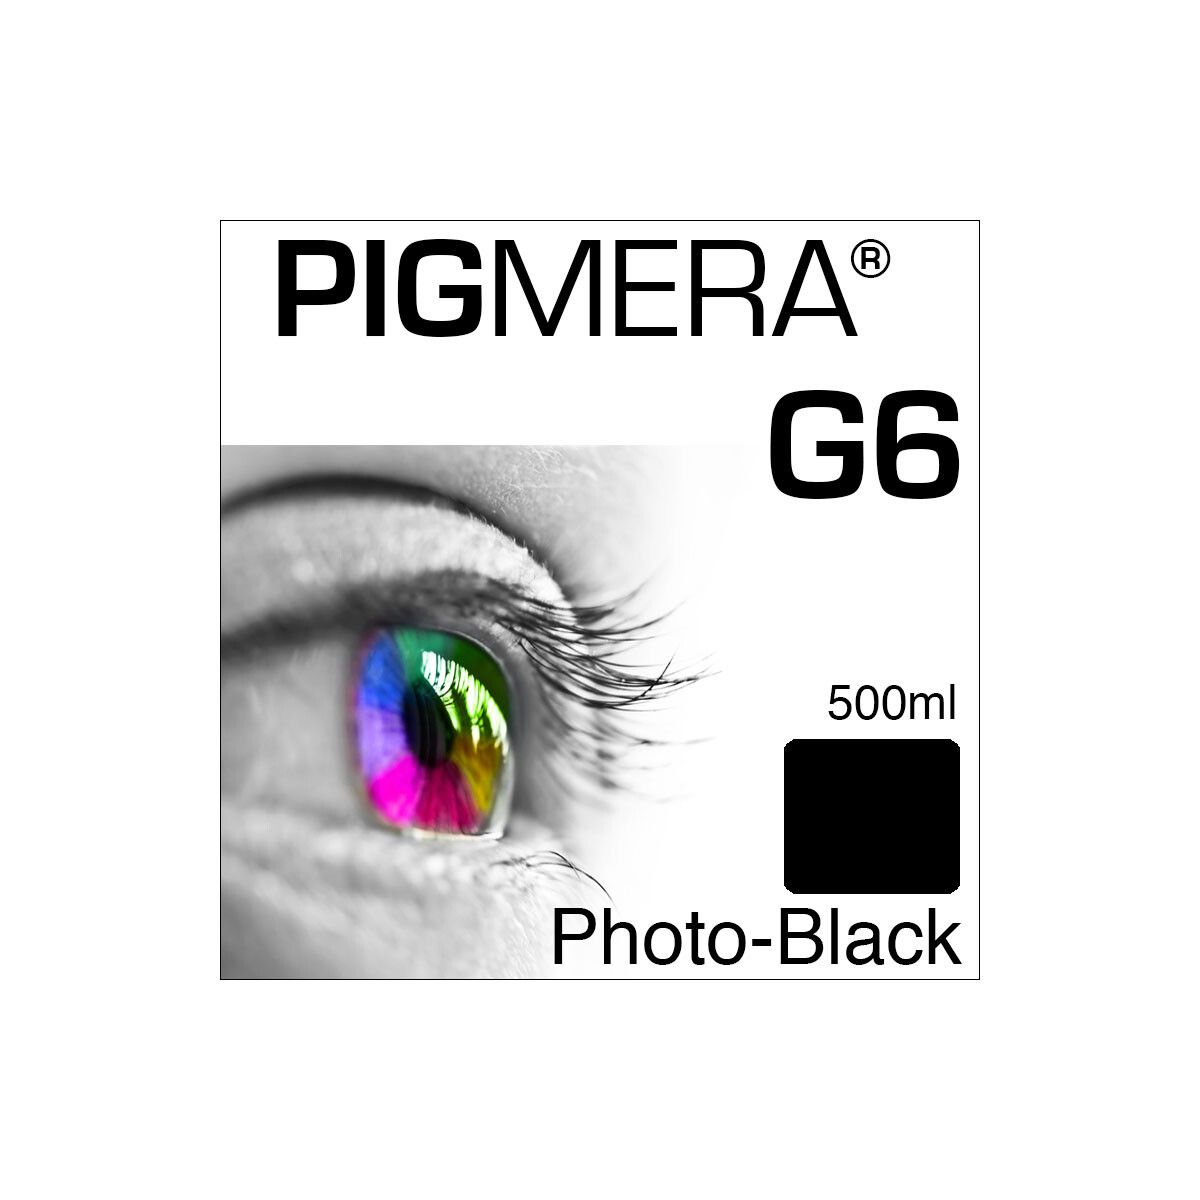 farbenwerk Pigmera G6 Flasche Photo-Black 500ml